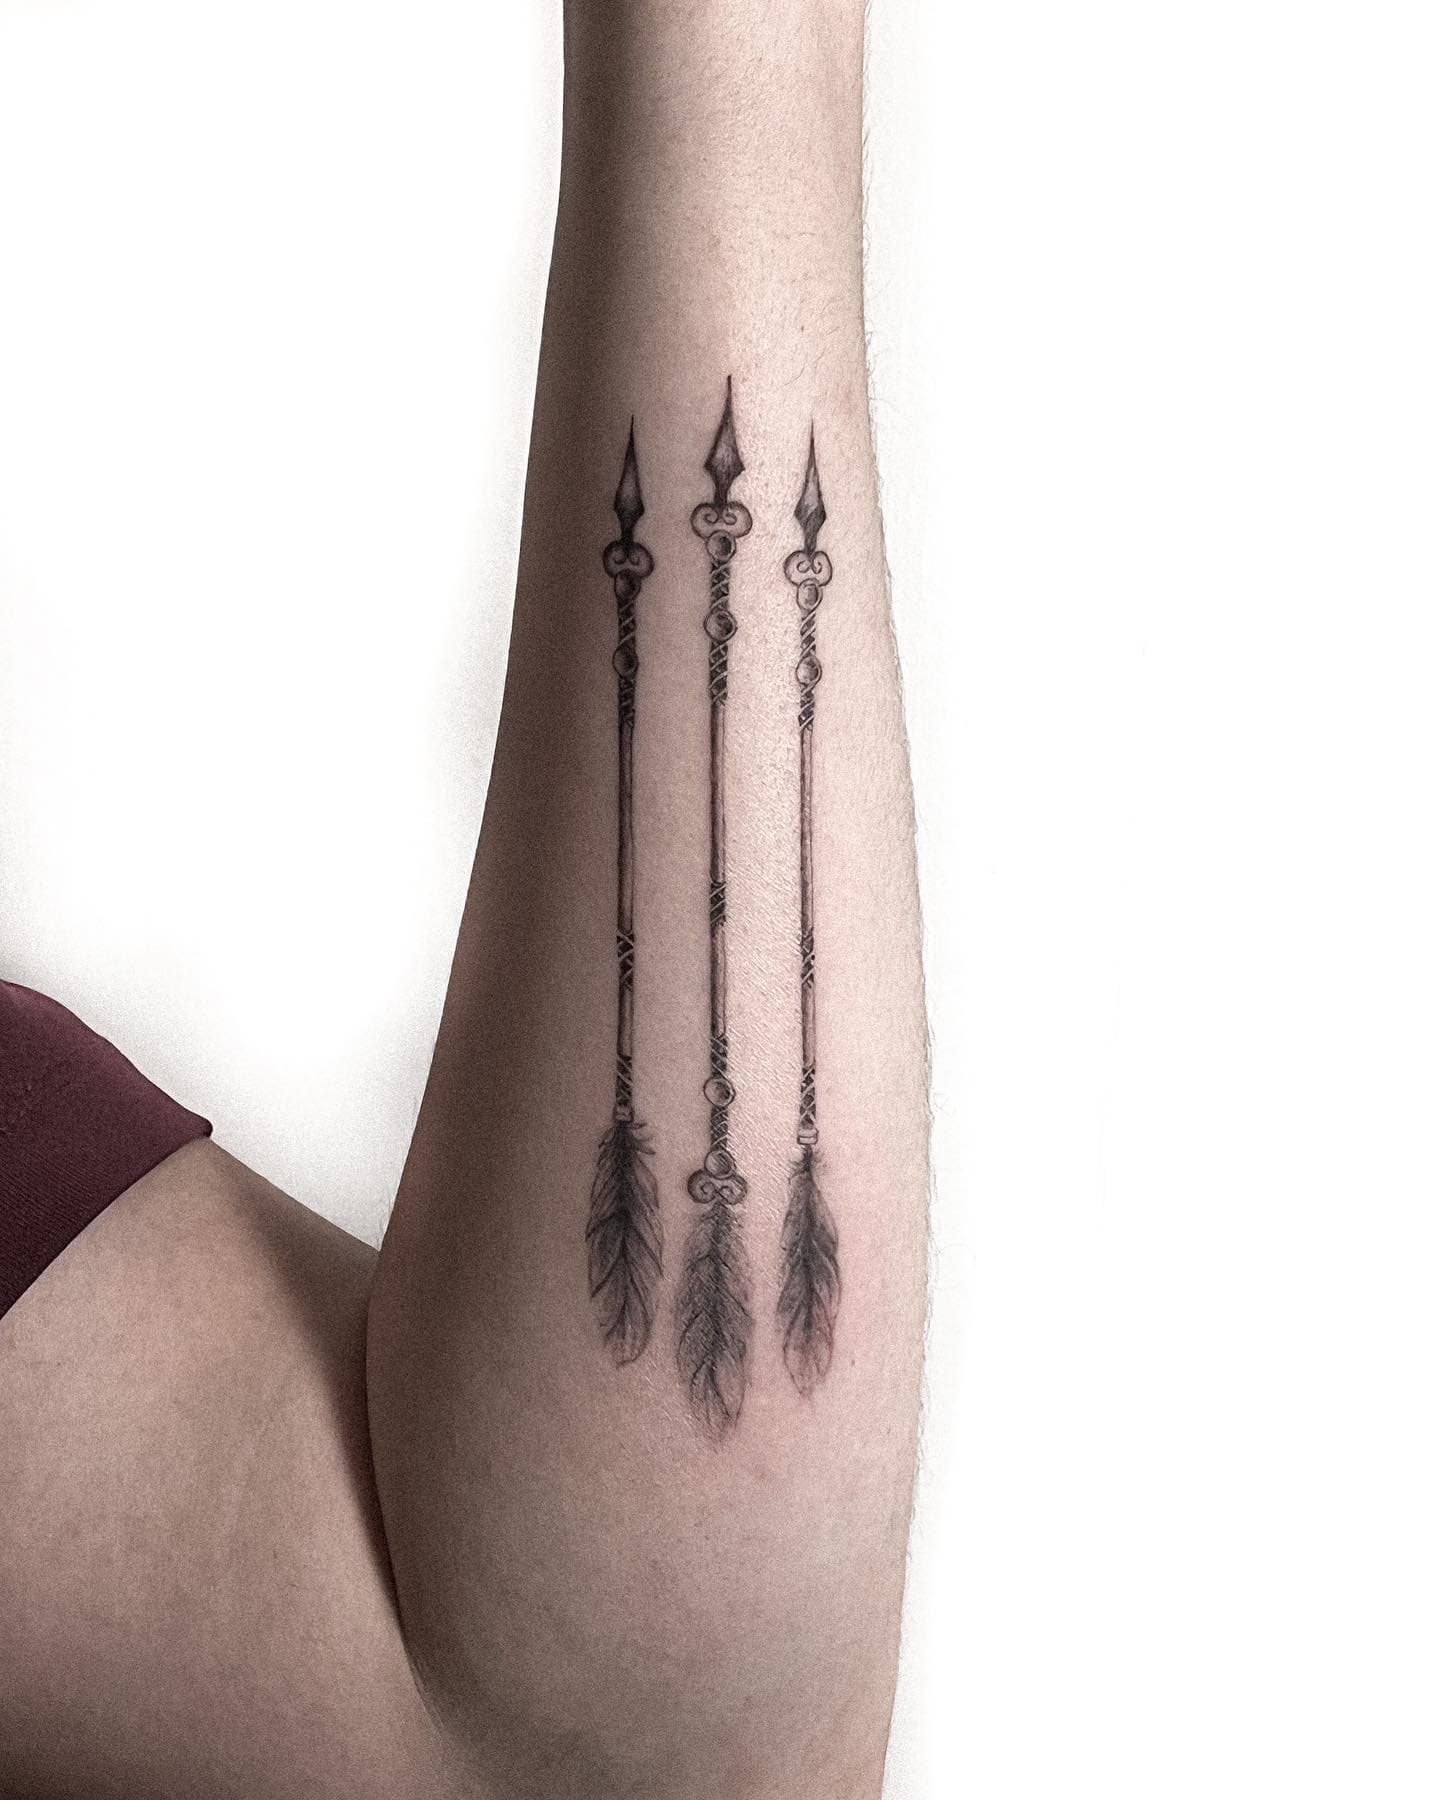 Three Arrow Tattoos Idea